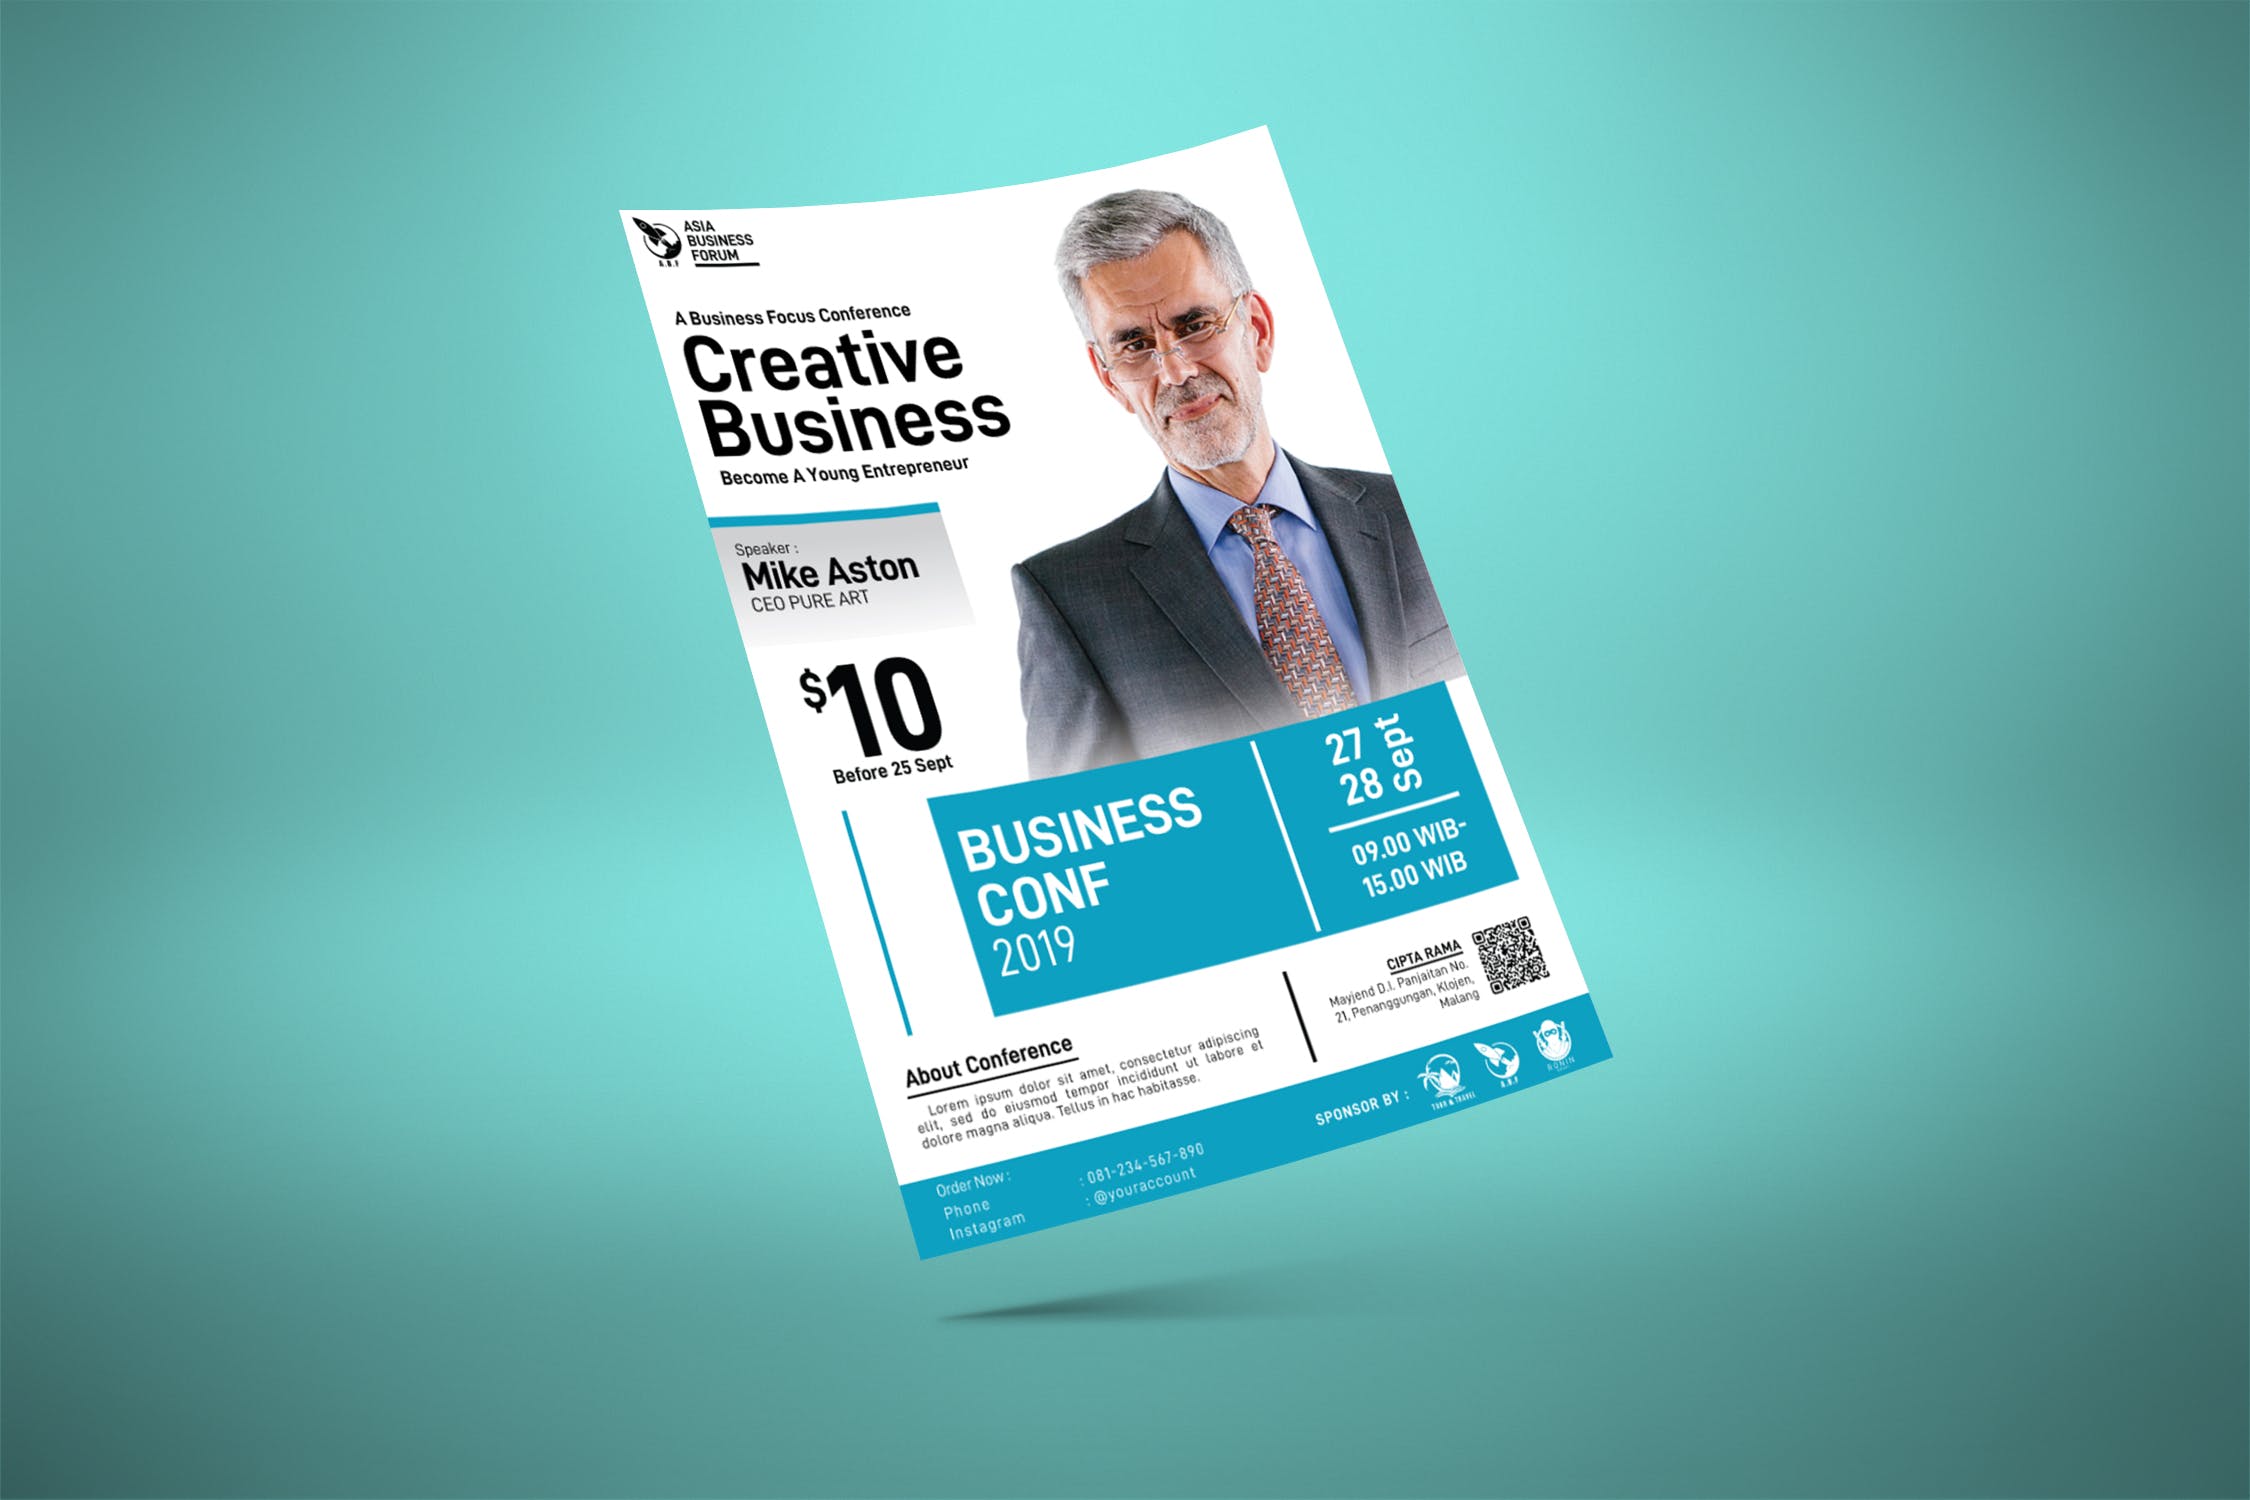 领导力会议/创意商业研讨会海报设计模板 Creative Business Coaching Poster插图(4)